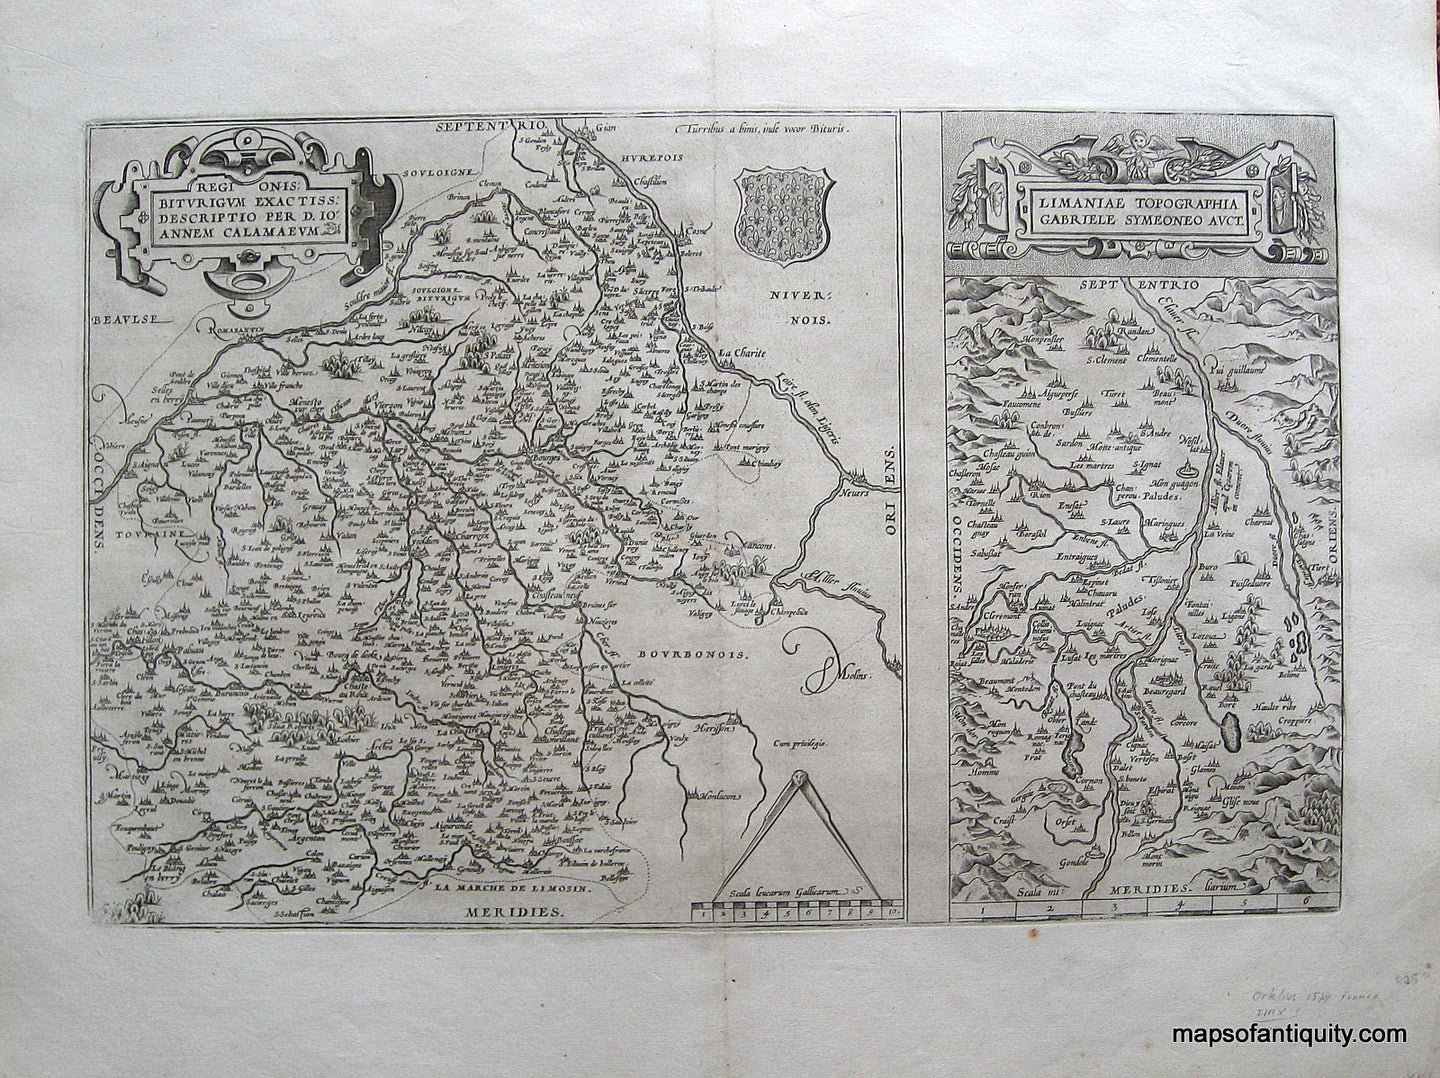 Antique-Black-and-White-Engraved-Map-Regionis-Biturigum-Exactiss-Descriptio-per-D.-10-Annem-Calamaeum-Limantiae-Topographia-Gabriele-Symeoneo-Auct.-France--1579-Ortelius-Maps-Of-Antiquity